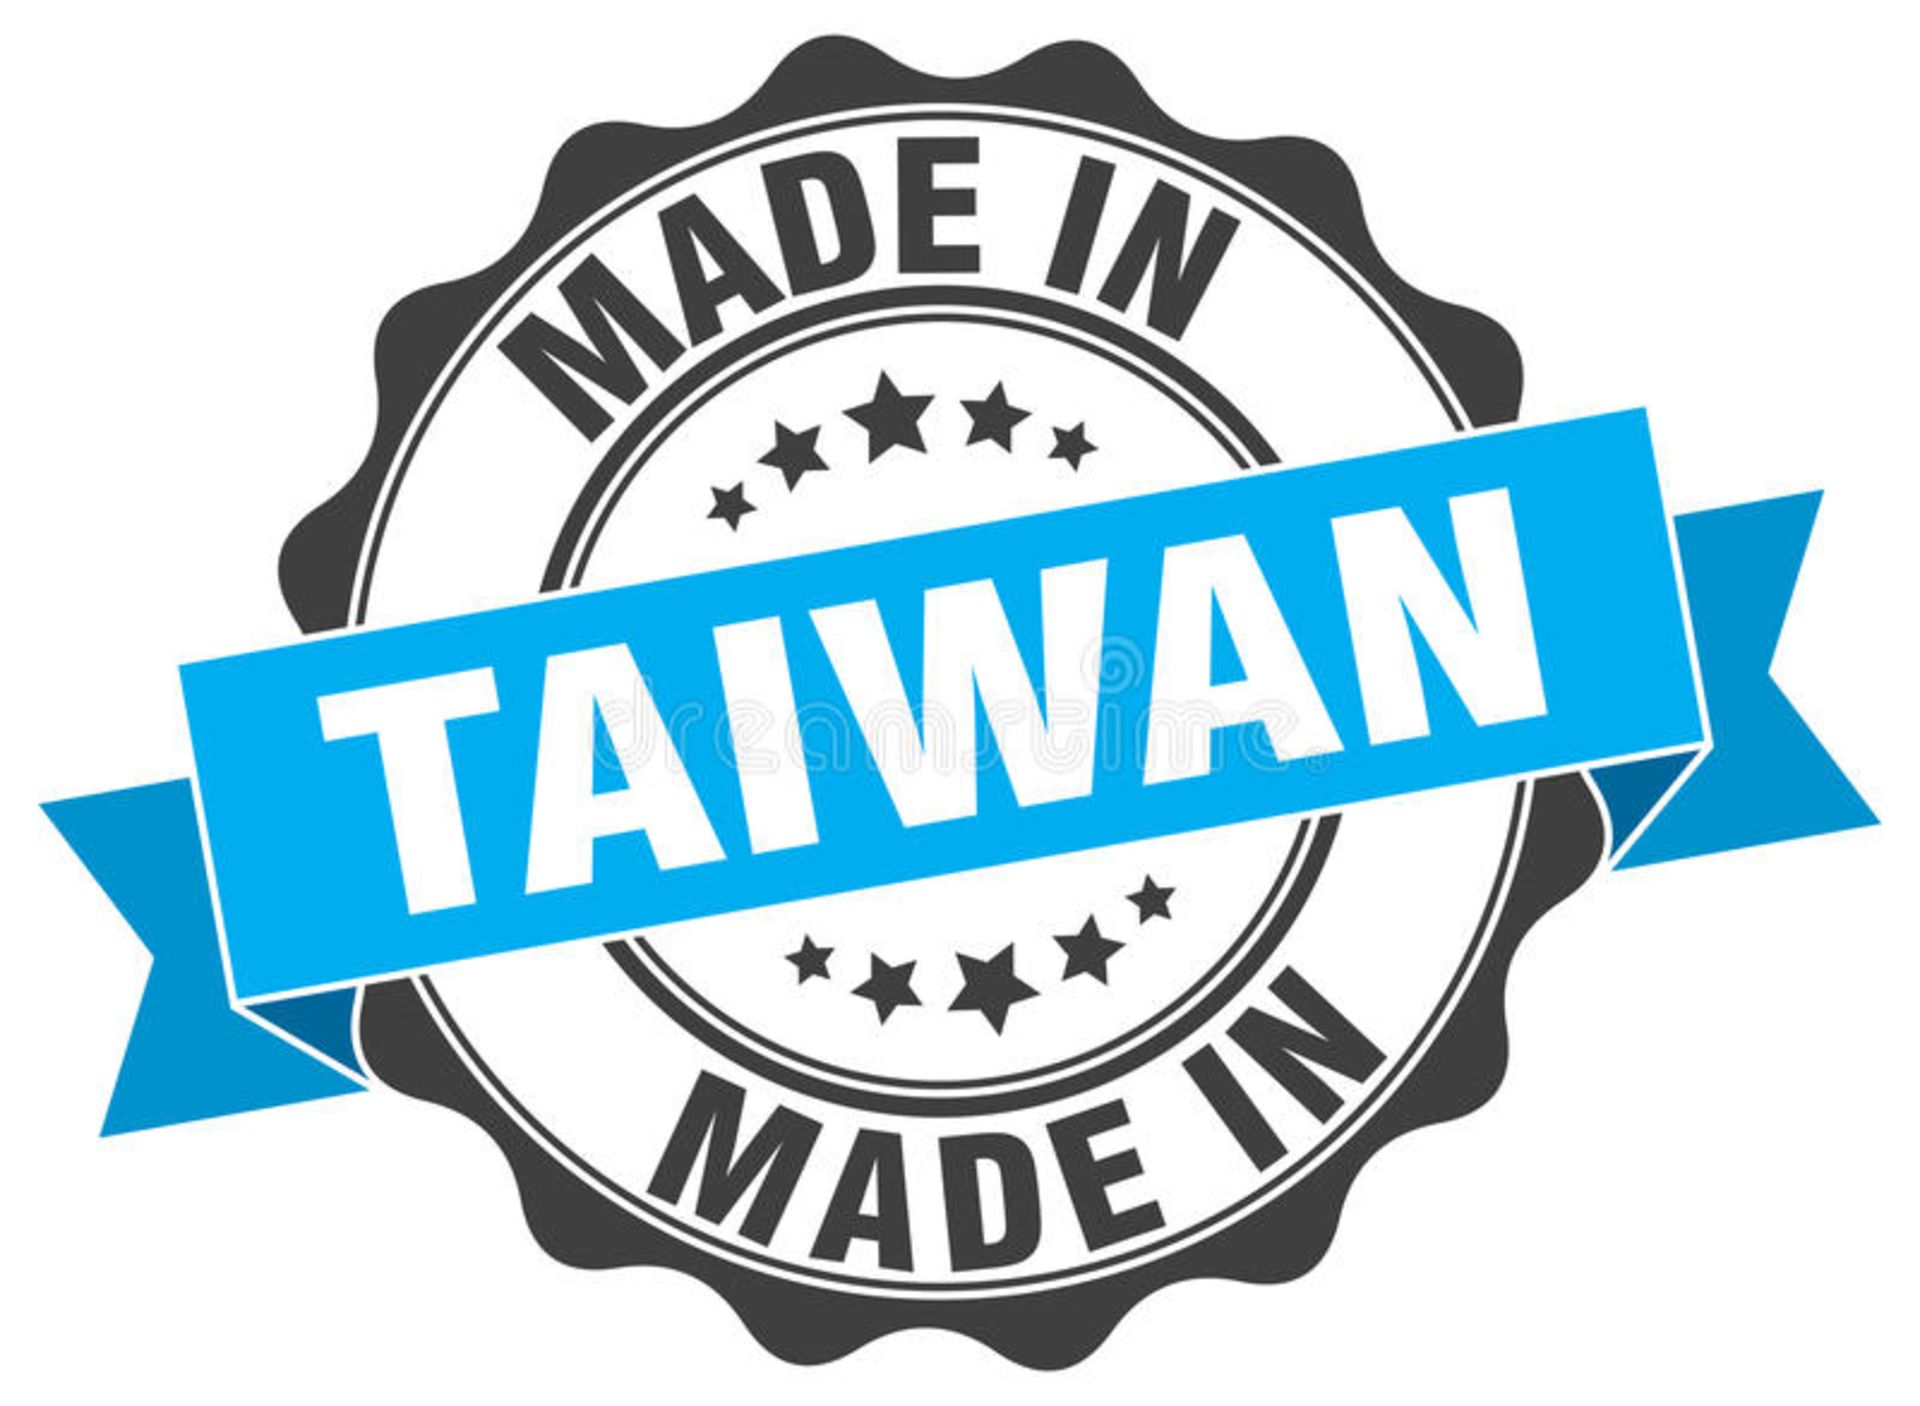 لوگوی ساخت تایوان / Logo Made IN Taiwan